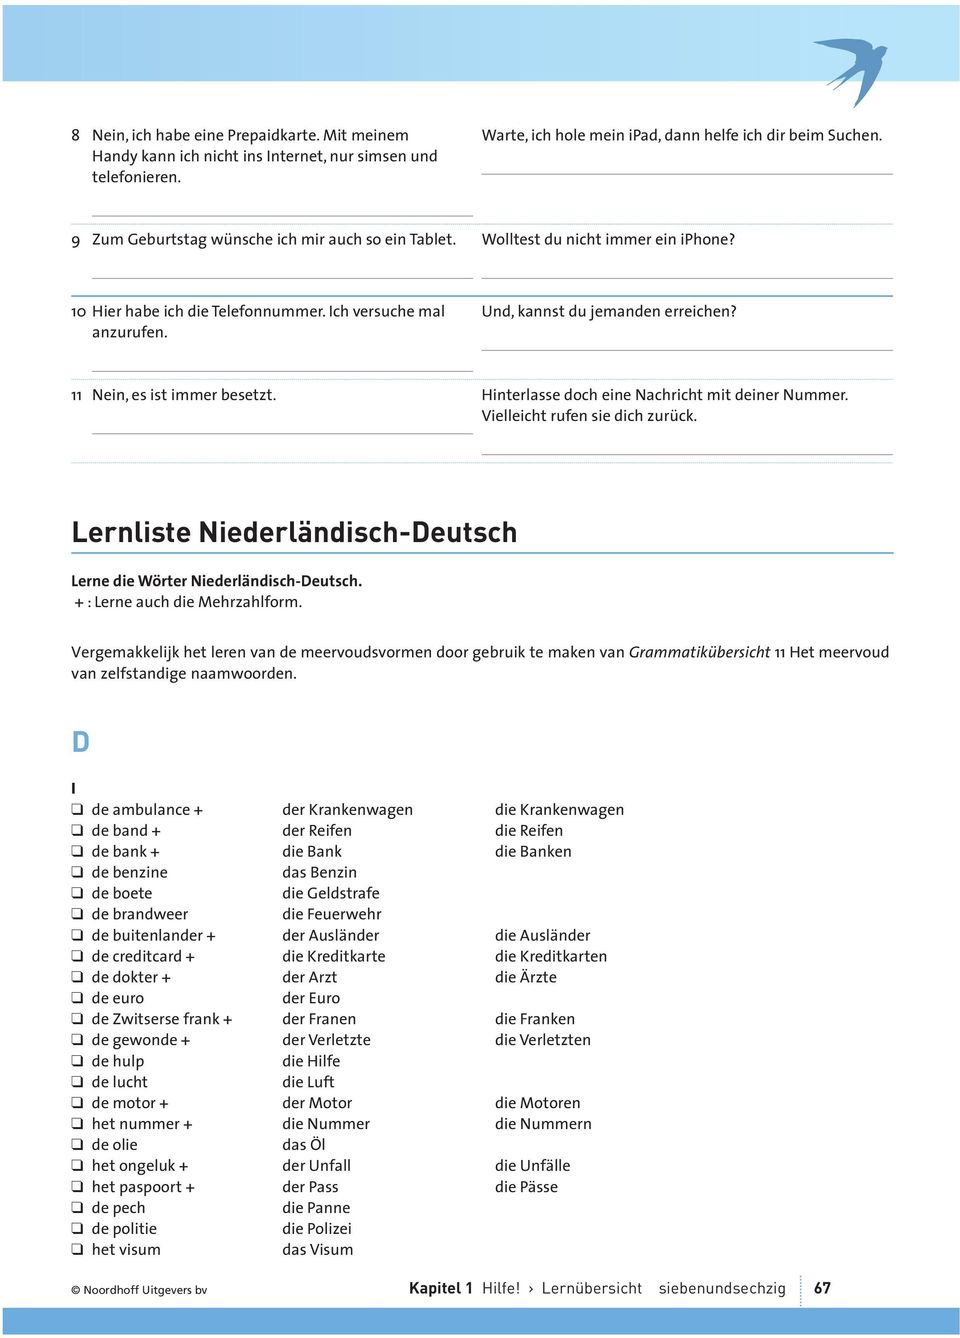 11 Nein, es ist immer besetzt. Hinterlasse doch eine Nachricht mit deiner Nummer. ielleicht rufen sie dich zurück. Lernliste Niederländisch-Deutsch Lerne die Wörter Niederländisch-Deutsch.